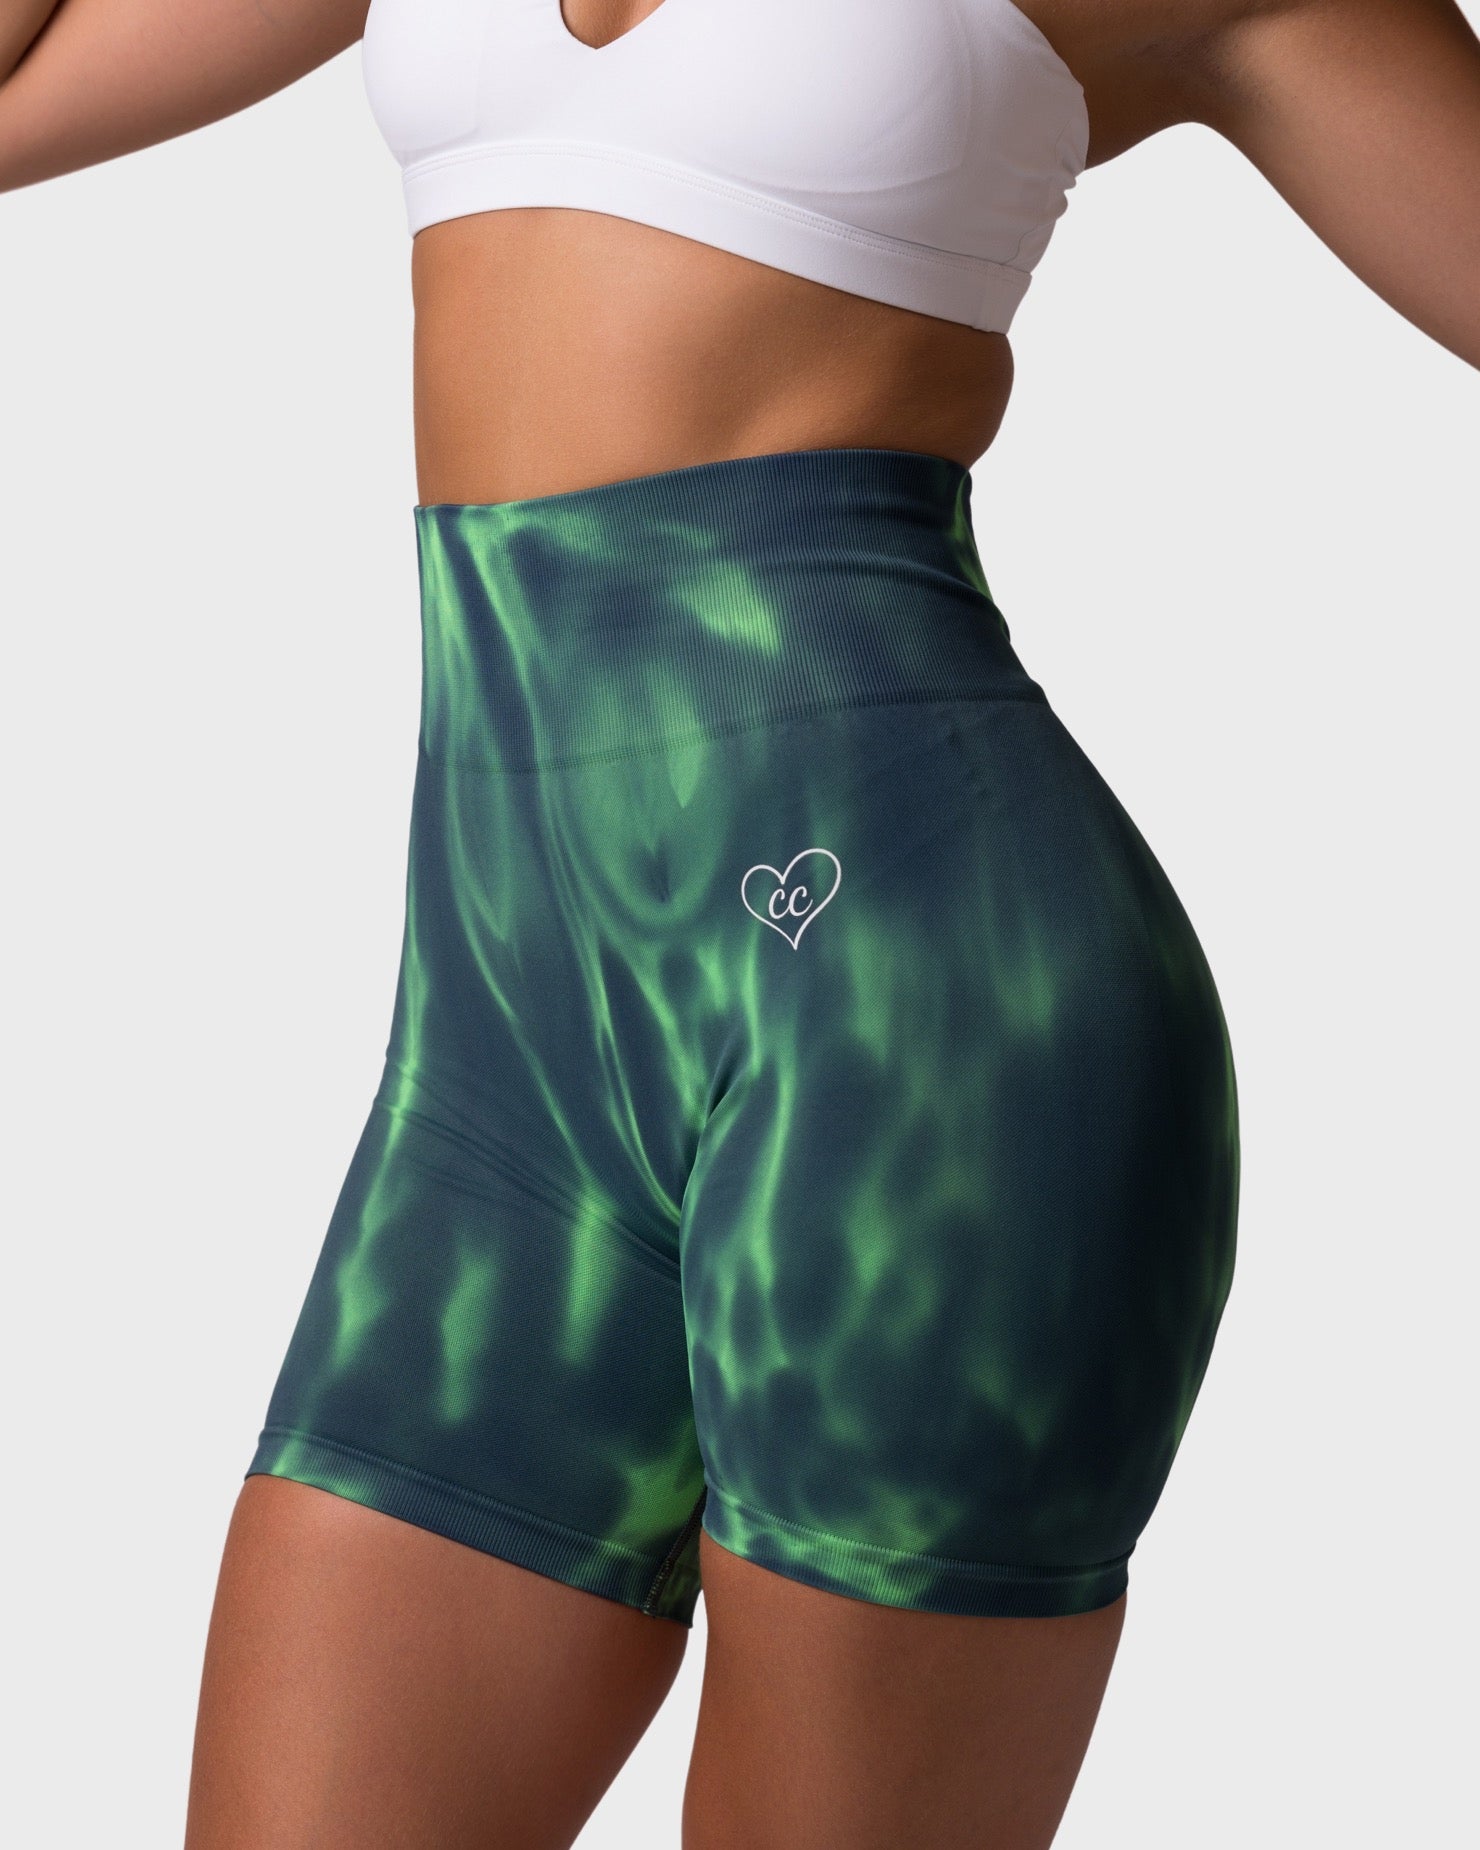 PWG x CC Shorts - Emerald